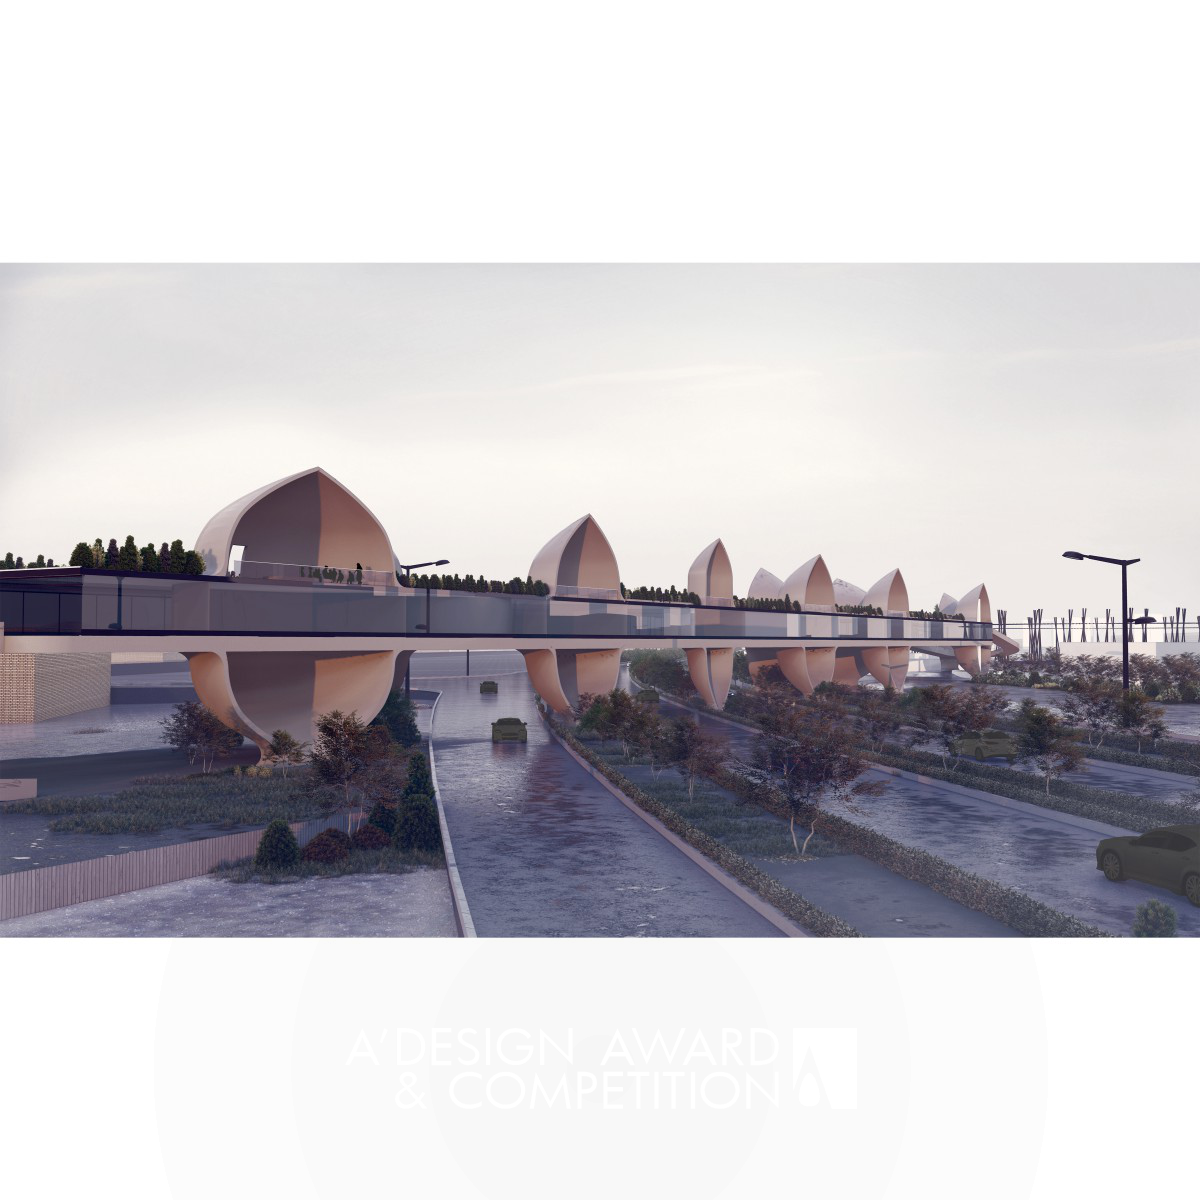 Esfahan: Eine innovative Brücke, die Technologie und Kultur verbindet